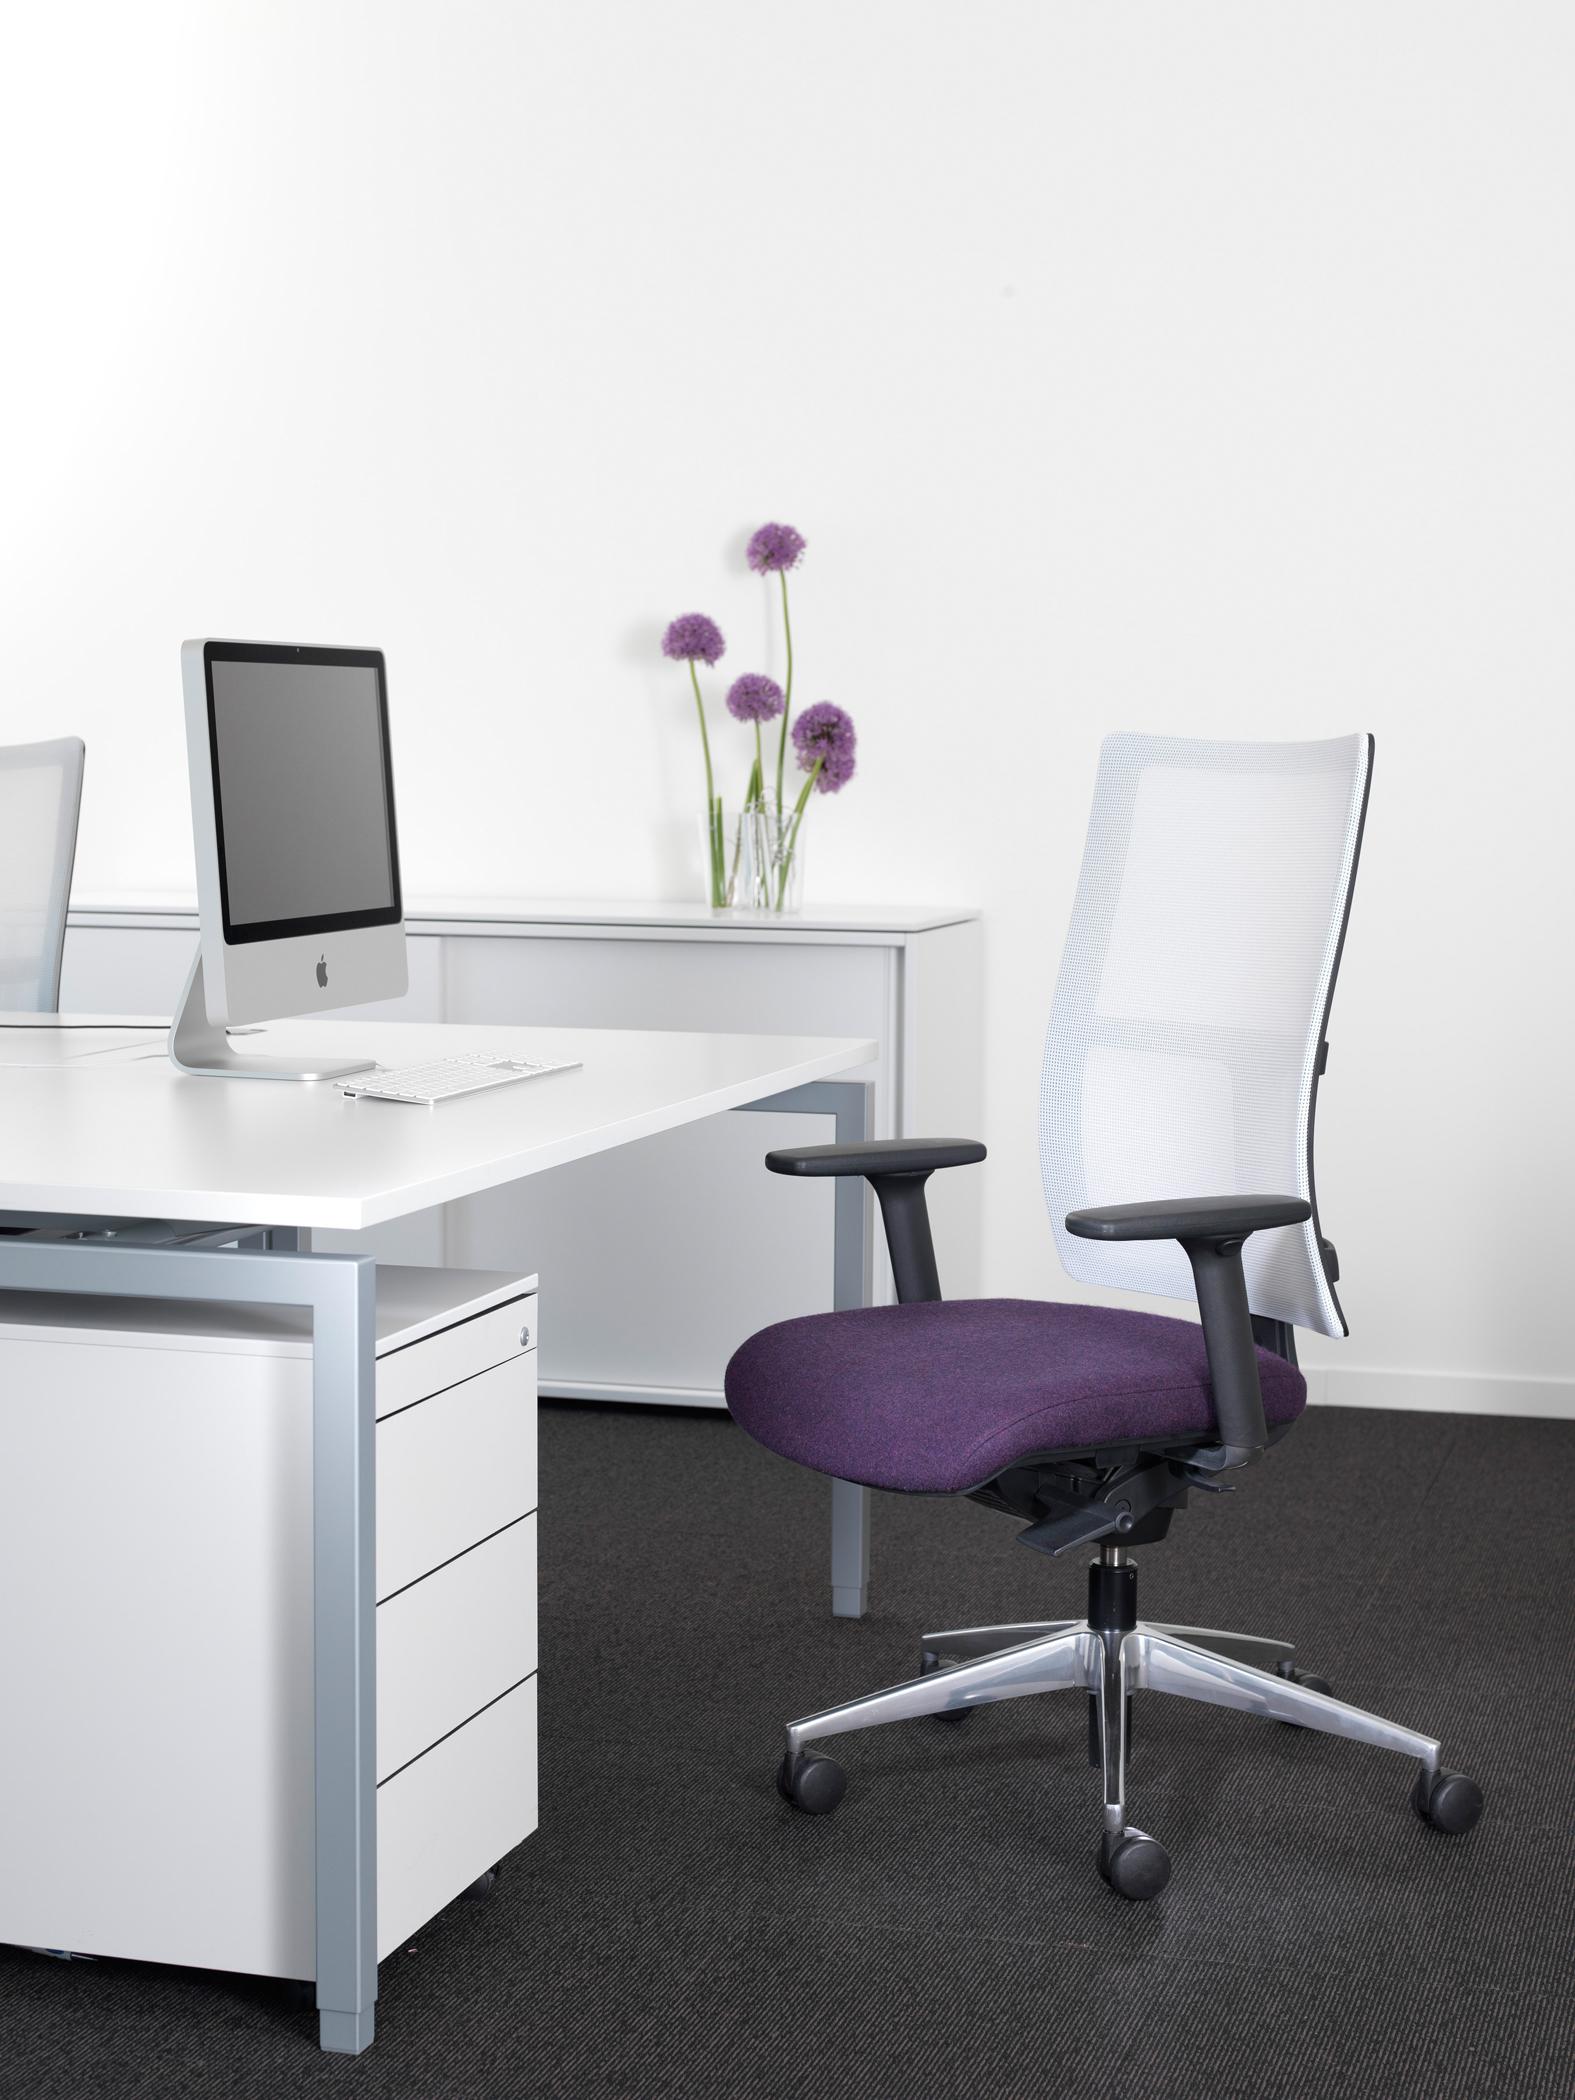 Bürozimmer in Weiß, Grau und Lila #büro #arbeitsplatz #bürostuhl #schreibtisch #blumendeko #grauerteppichboden ©Kusch+Co, Designer: Justus Kolberg